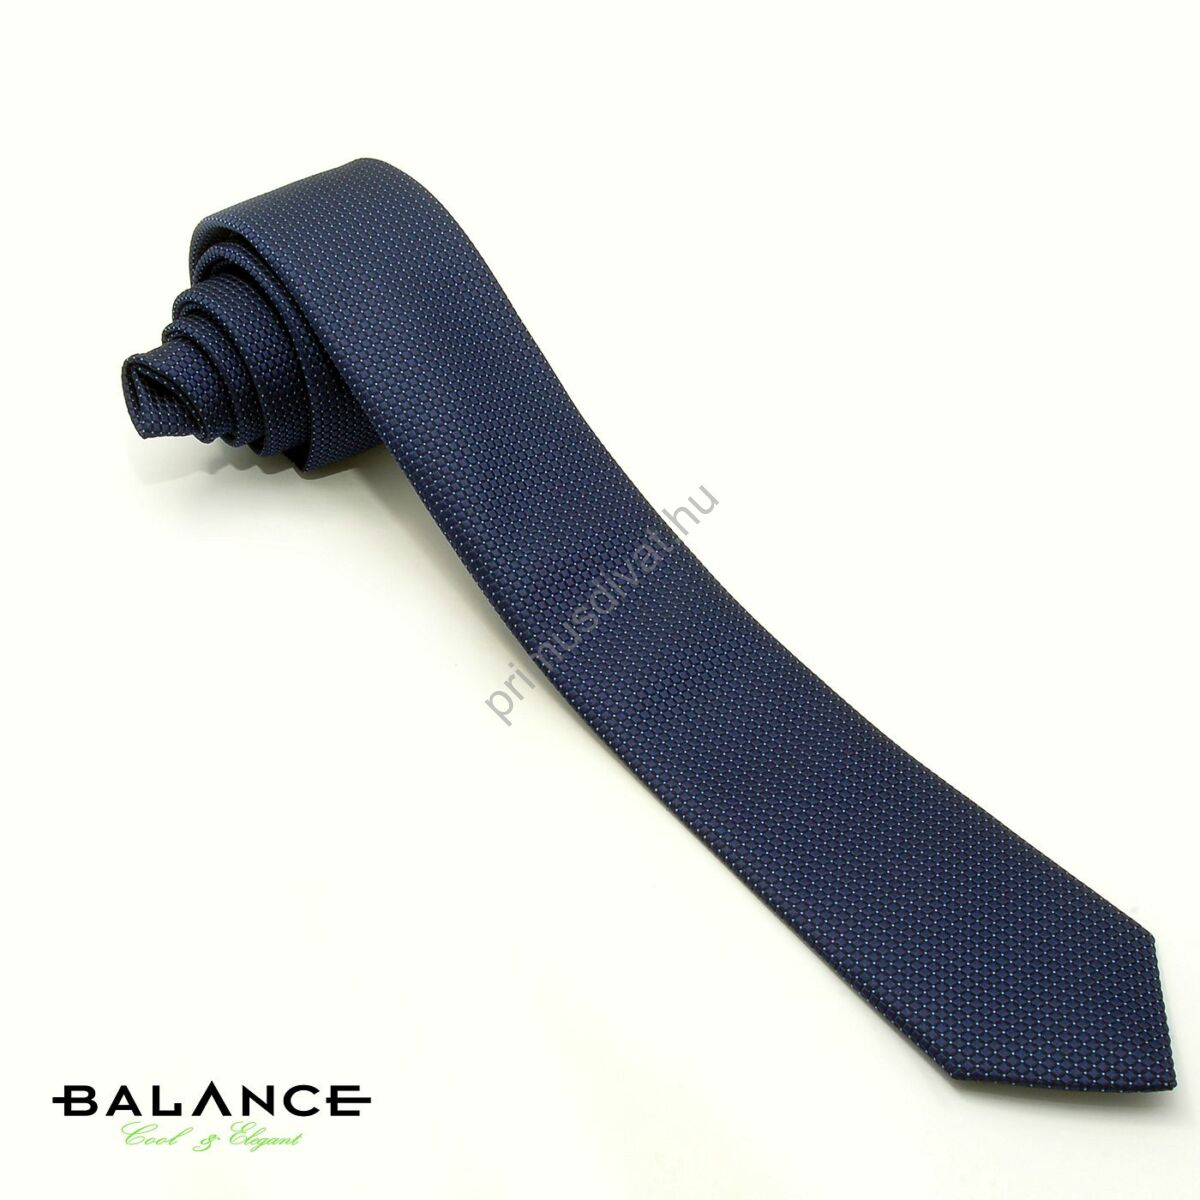 Balance apró világoskék pöttyös, anyagában szövött mintás sötétkék keskeny selyem nyakkendő